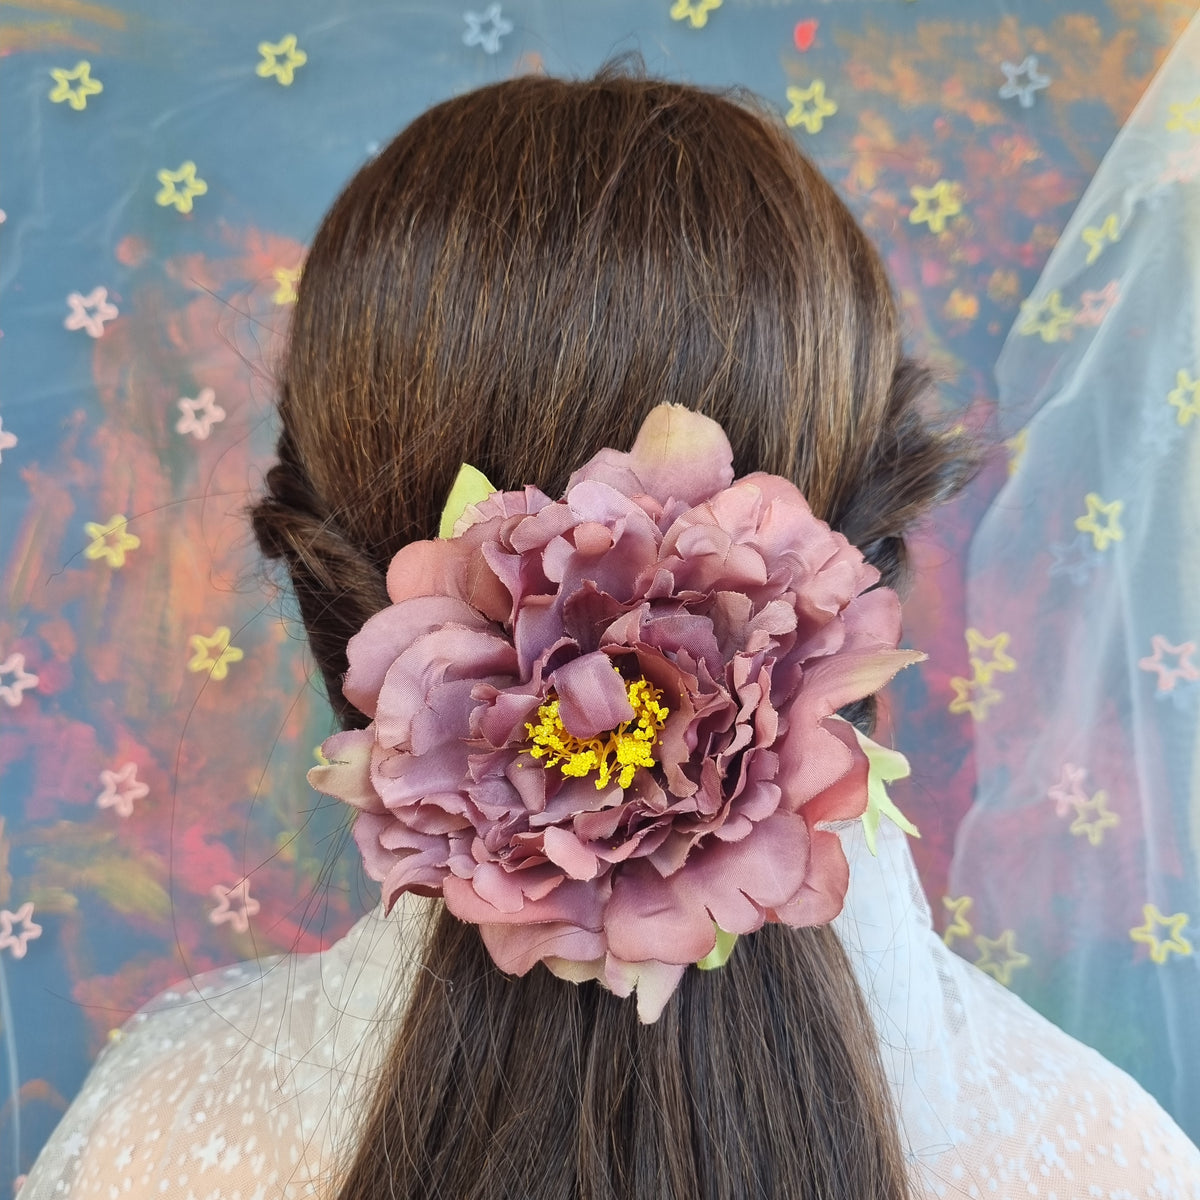 Blommefarvet pæon - Hårpynt med blomster og perler til bryllup, konfirmation og fest